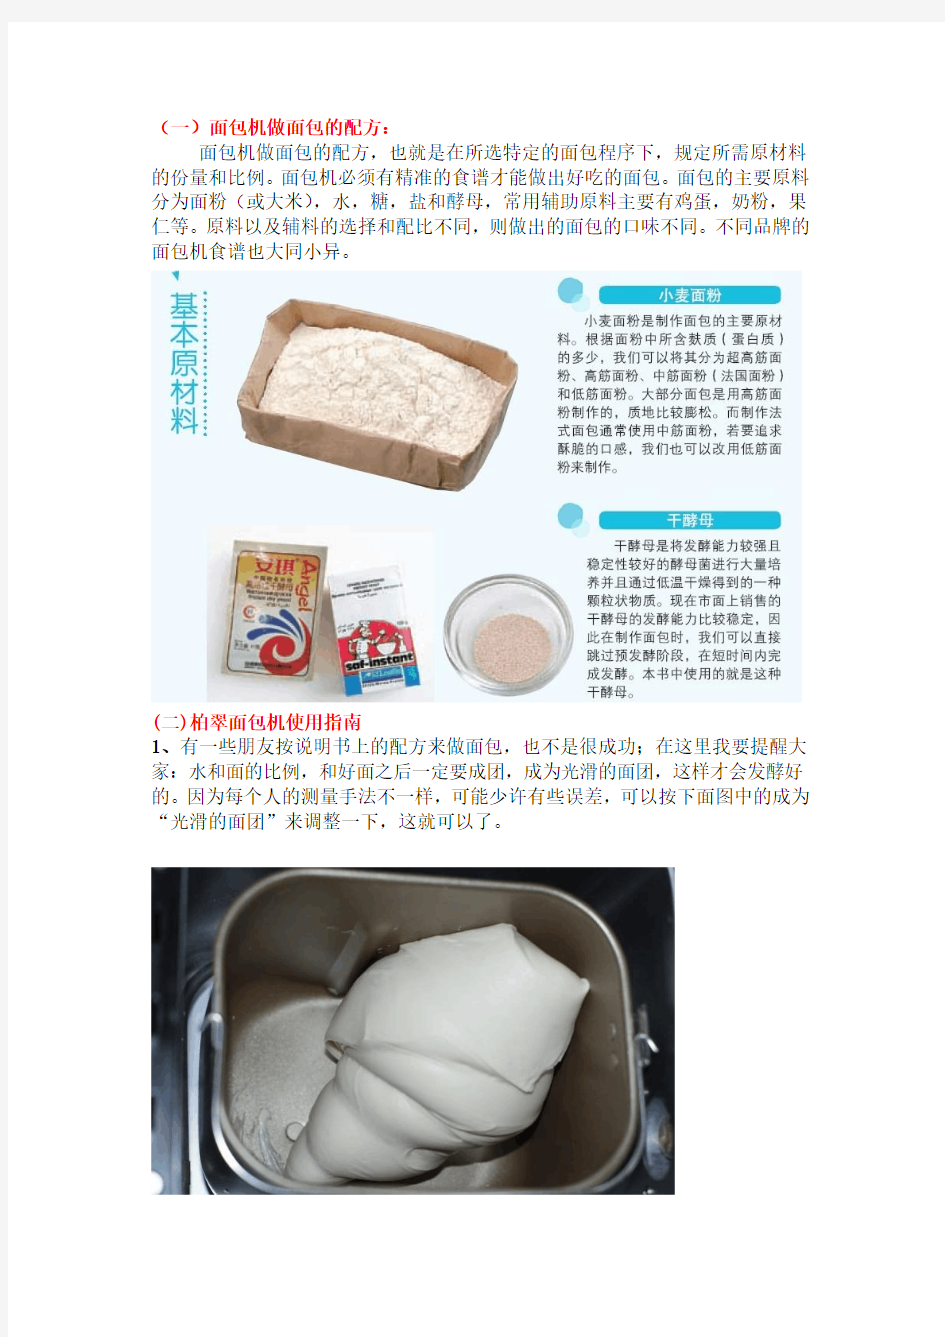 面包机做面包的配方及面包机的使用方法经验汇总